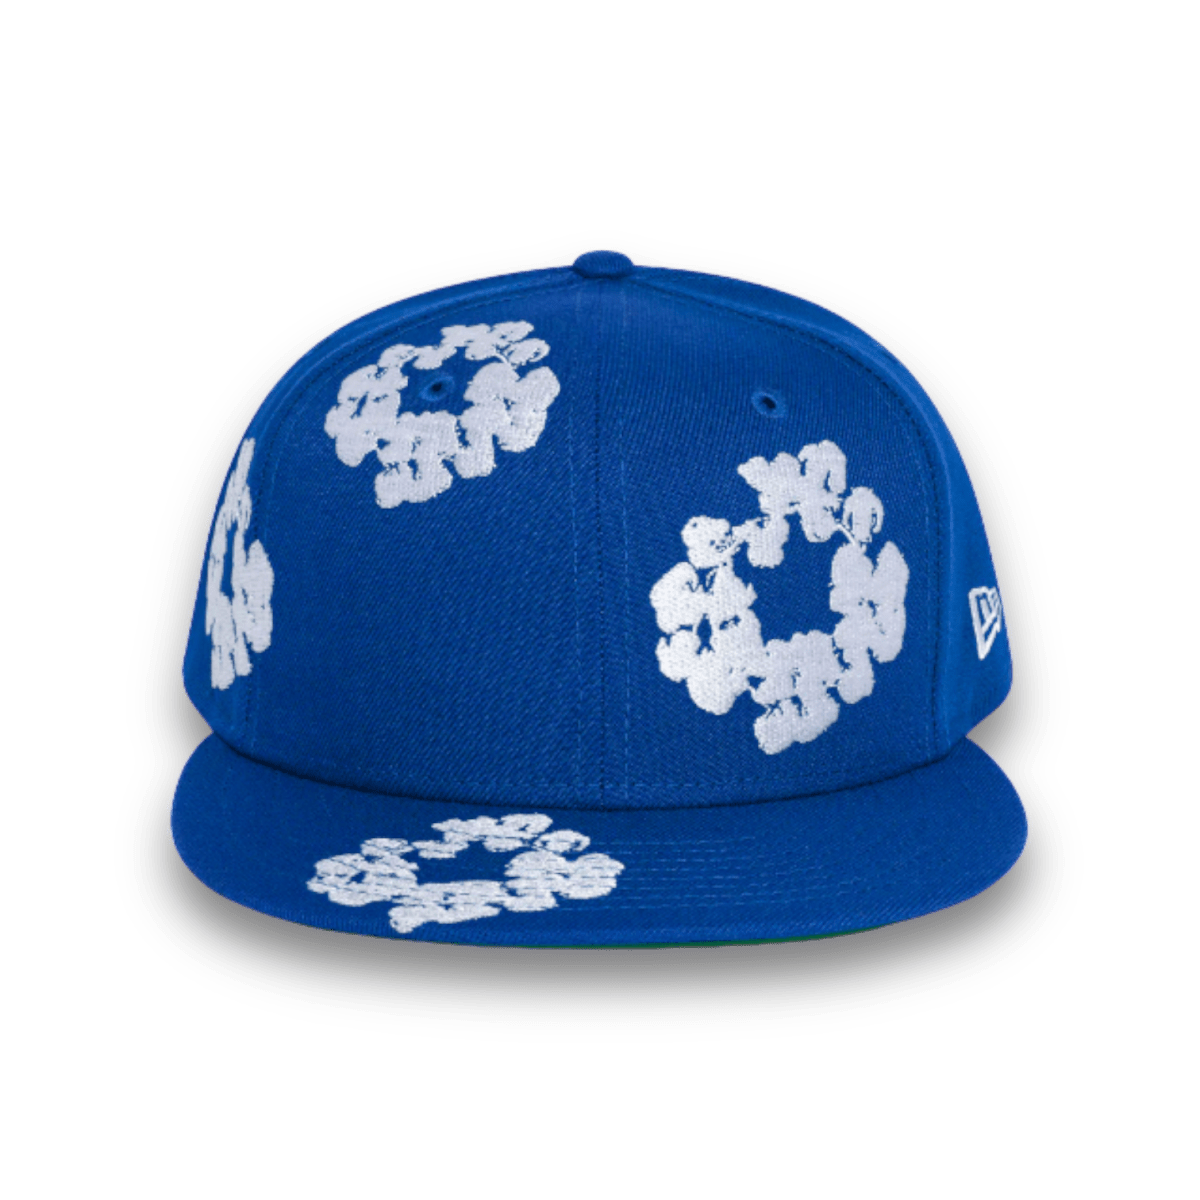 Denim Tears New Era Cotton Wreath Hat 59/50 - Royal Blue - Headwear - Jawns on Fire Sneakers & Streetwear